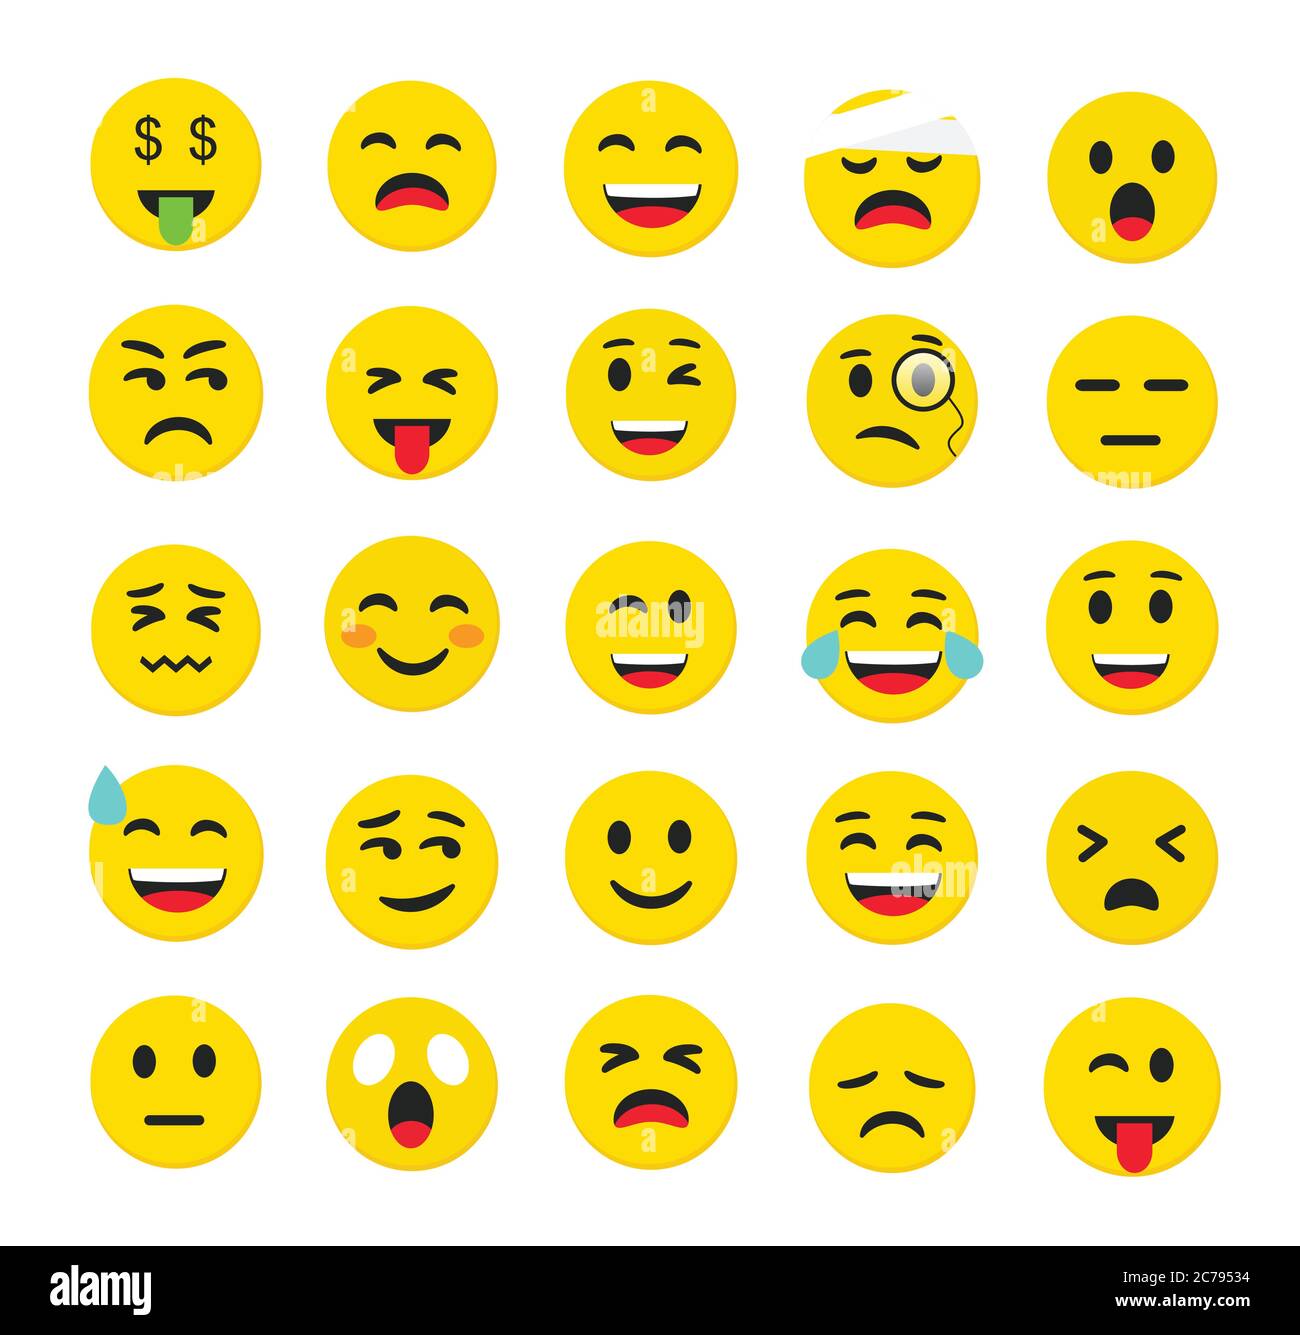 Hochwertige Emoticons isoliert auf einem weißen Hintergrund.Emoticons Set. Emoji Sammlung Vektor Illustration.Gelber Smiley.Emoji.Emoticons  Stock-Vektorgrafik - Alamy